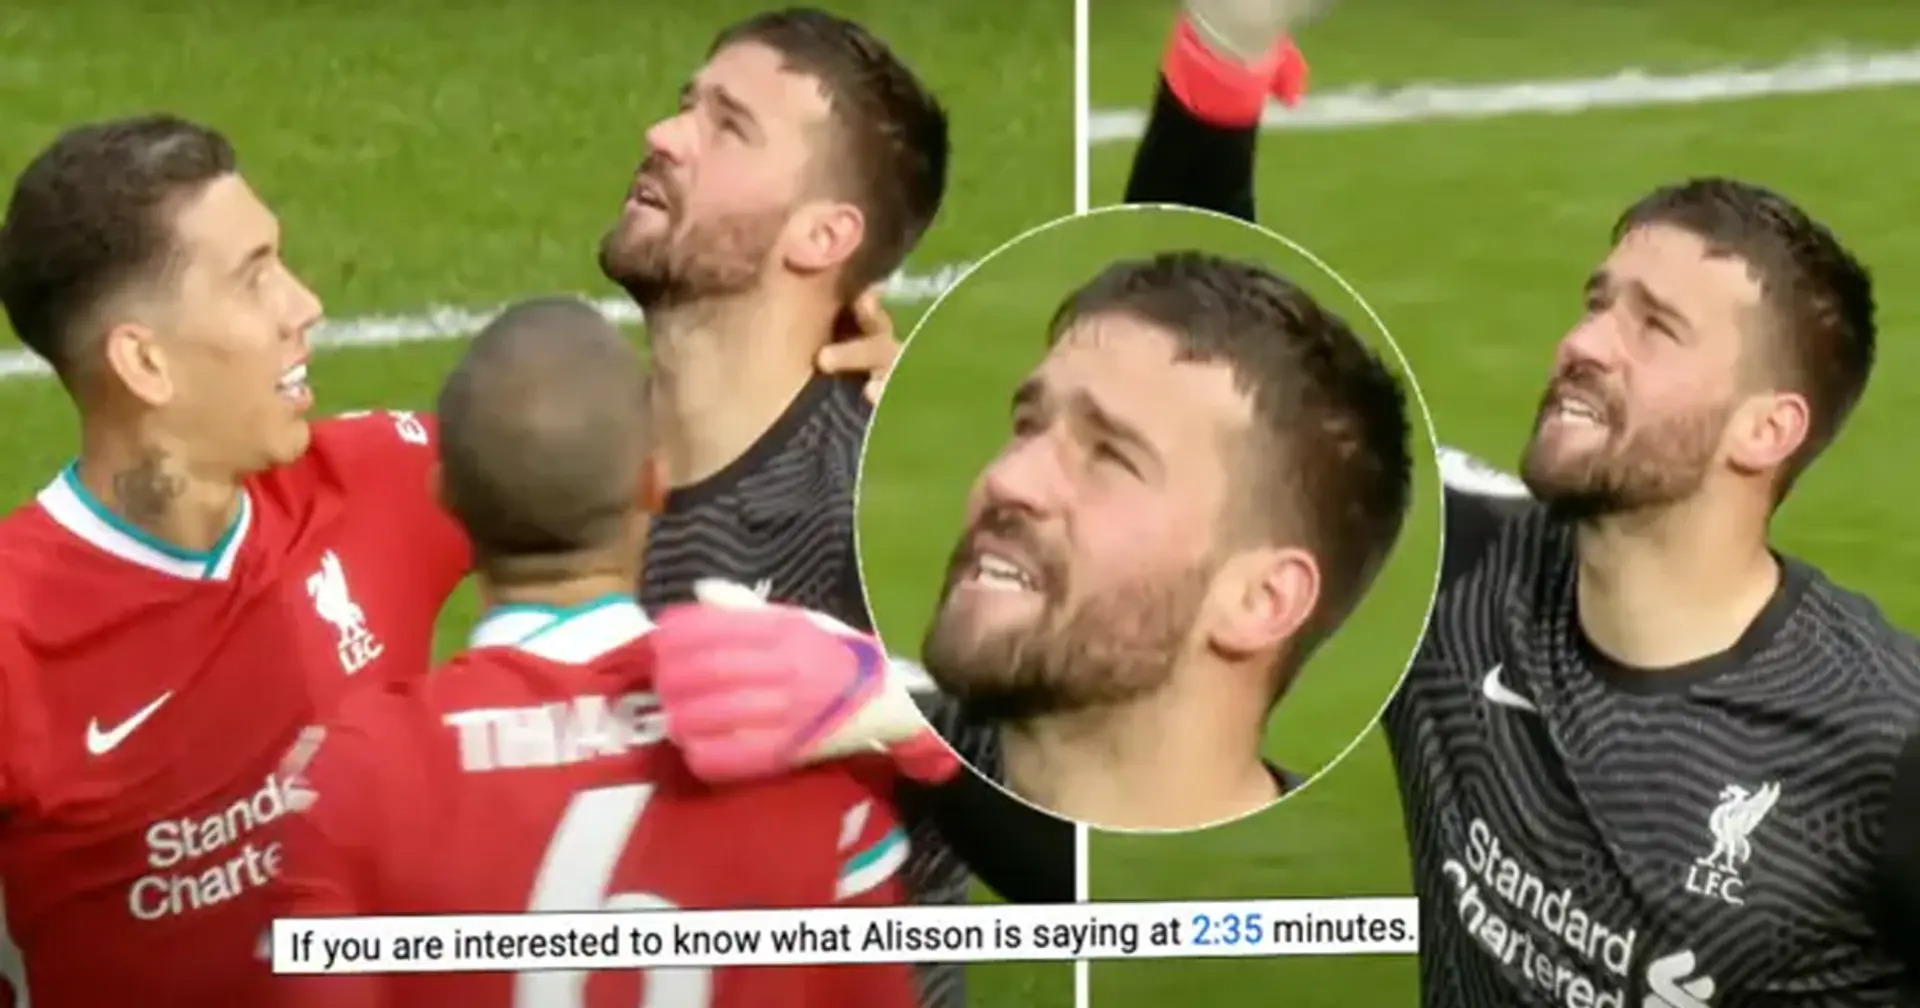 'Puedo leer claramente sus labios': aficionado brasileño revela lo que dijo exactamente Alisson tras marcar para el Liverpool